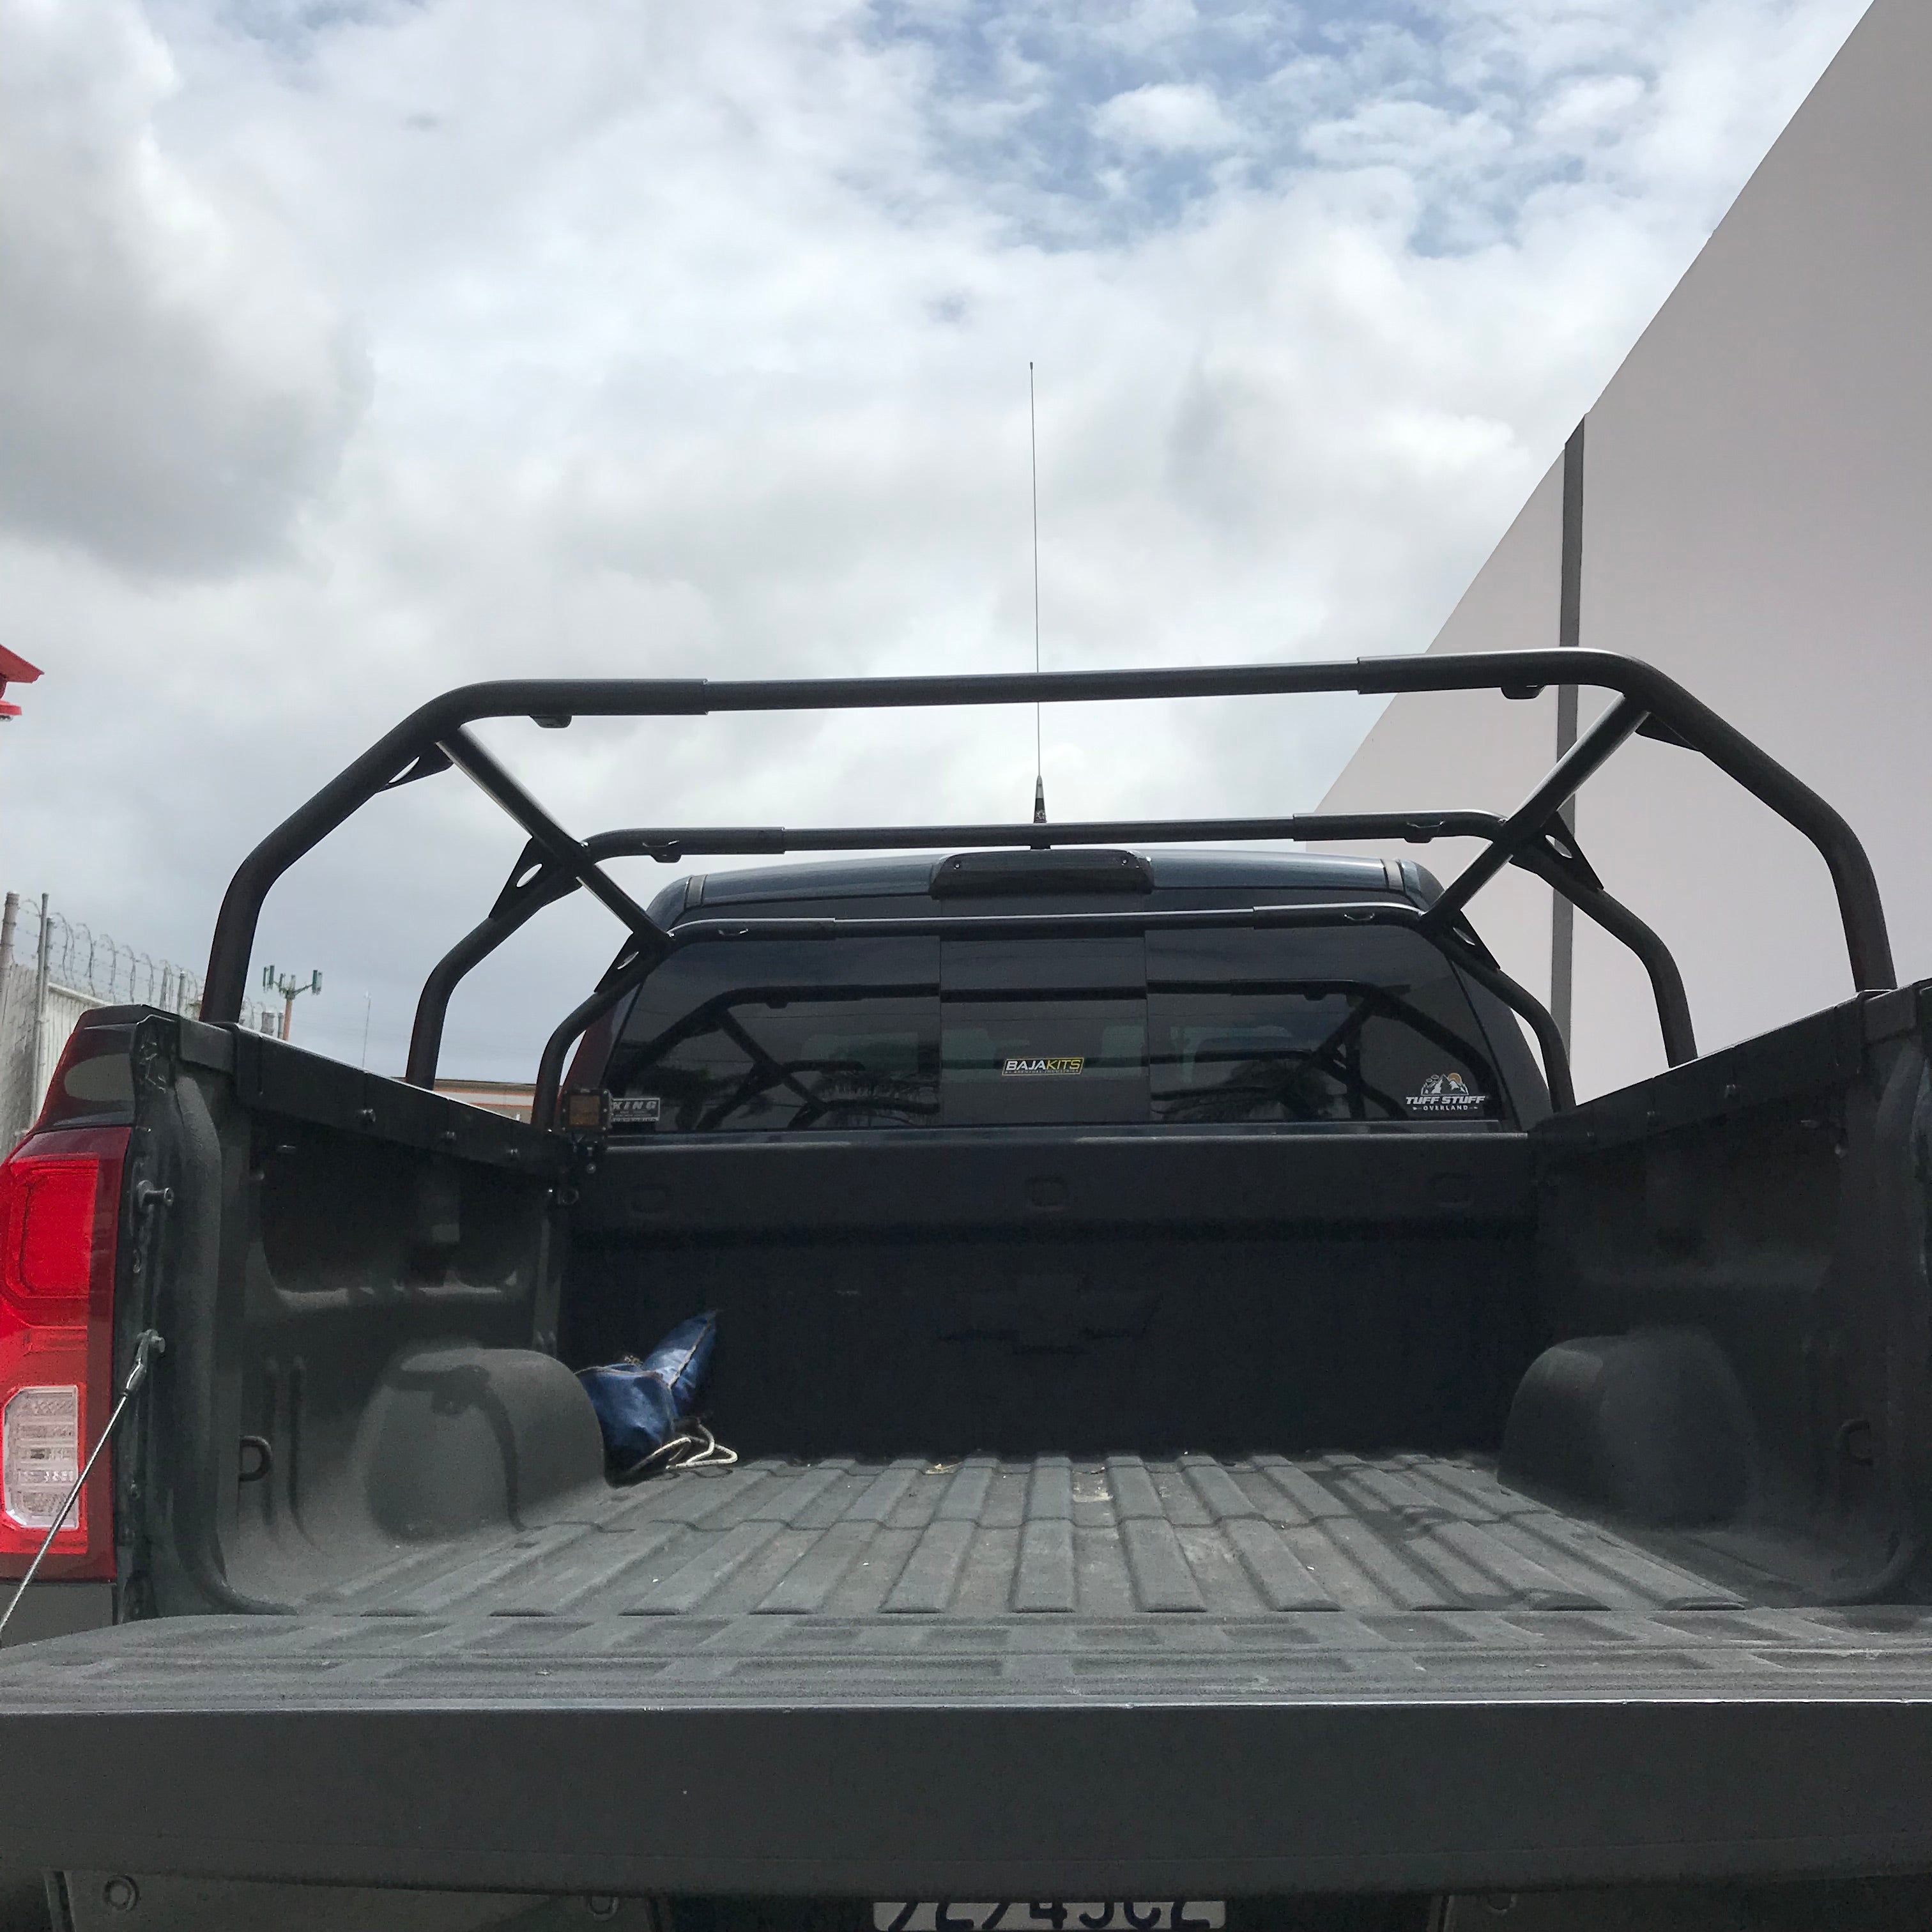 Truck Bed Rack for RTT, Adjustable, 51" Length, Steel, Black